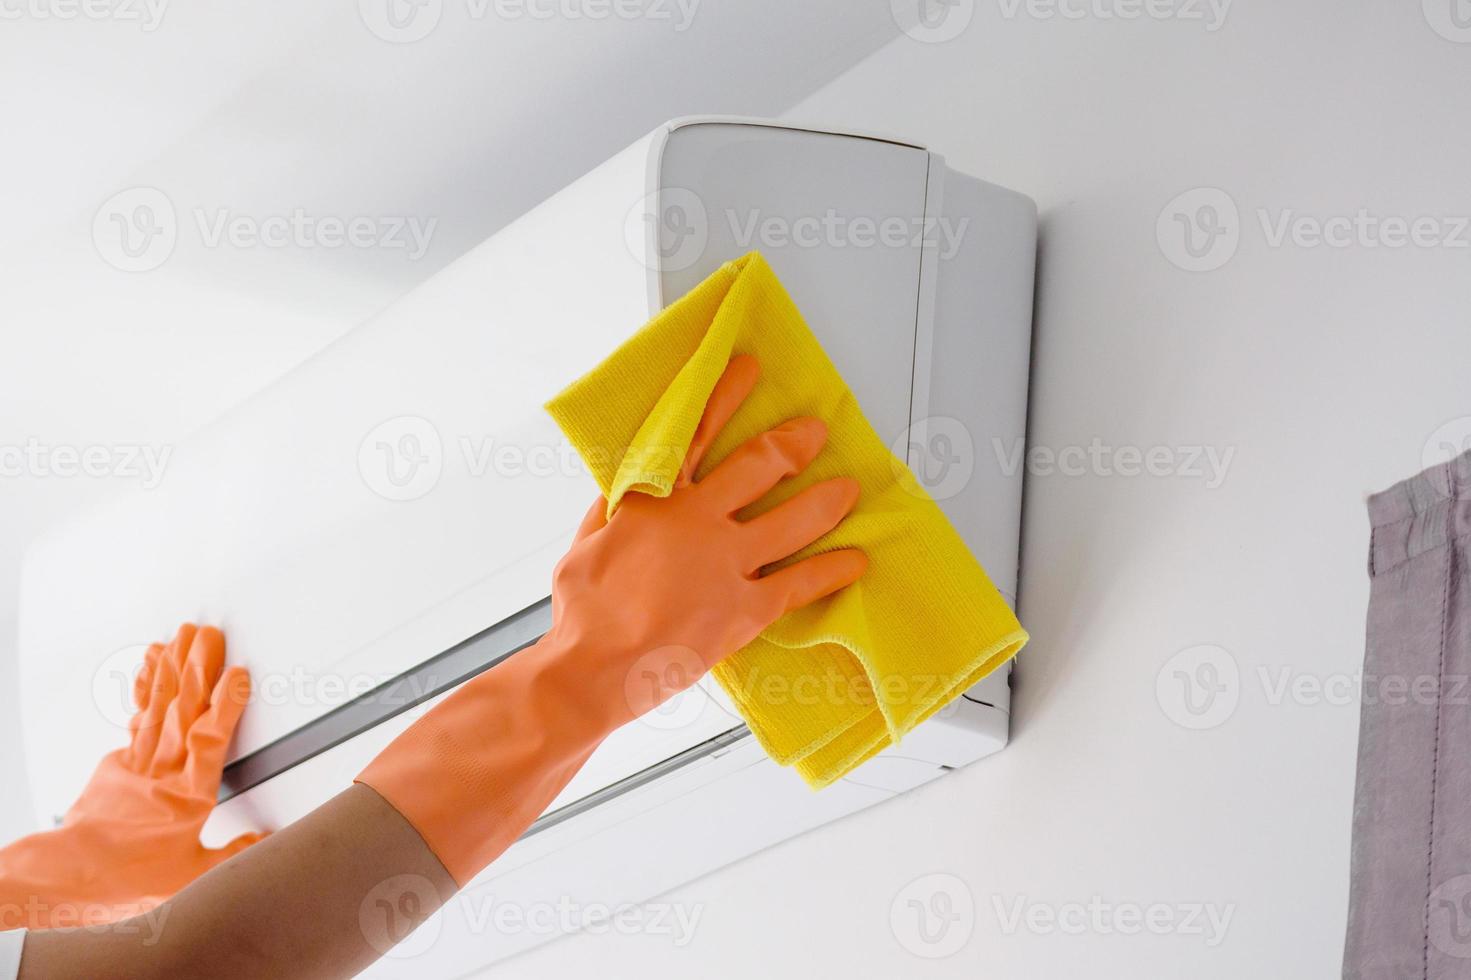 homme asiatique nettoyant le climatiseur avec un chiffon en microfibre photo